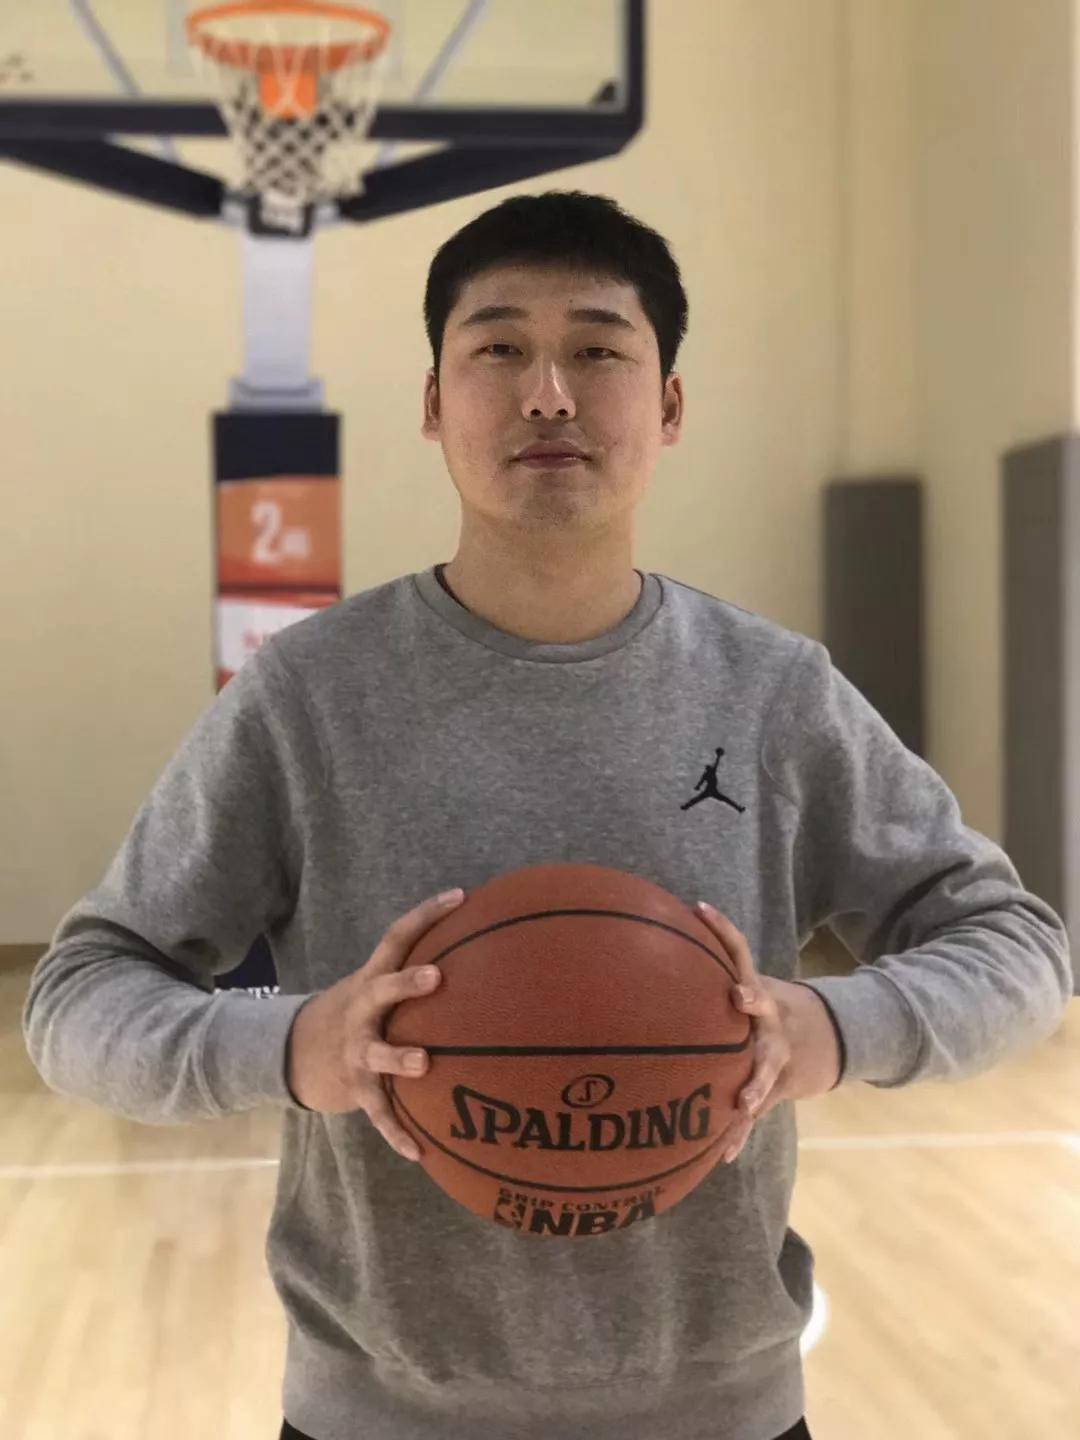 所有中,外籍教练均拥有丰富的篮球教学经验,专注于适合中国青少年的